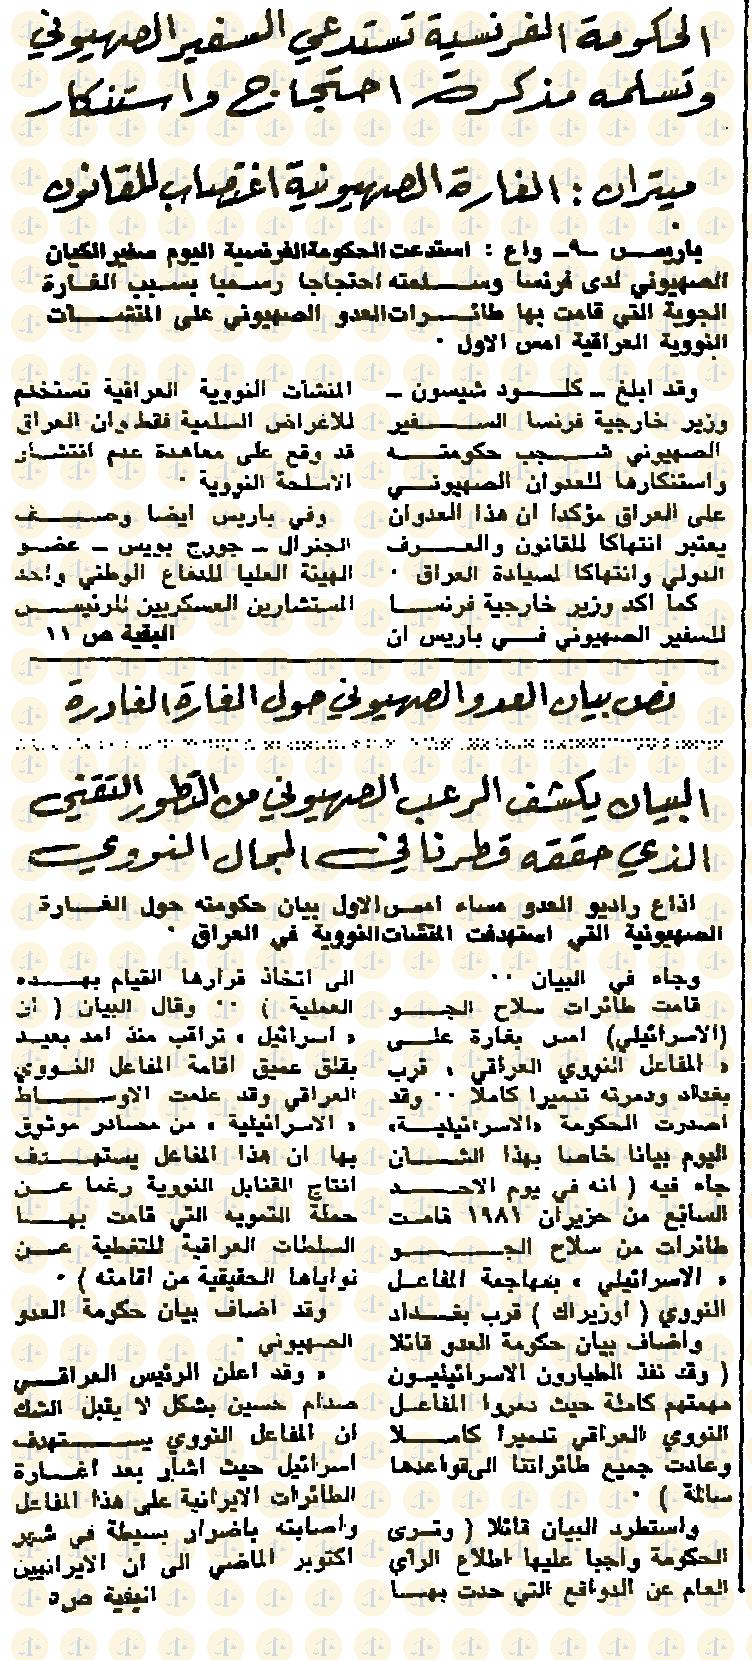 جريدة الثورة العراقية يوم 10 يونيو 1981 م